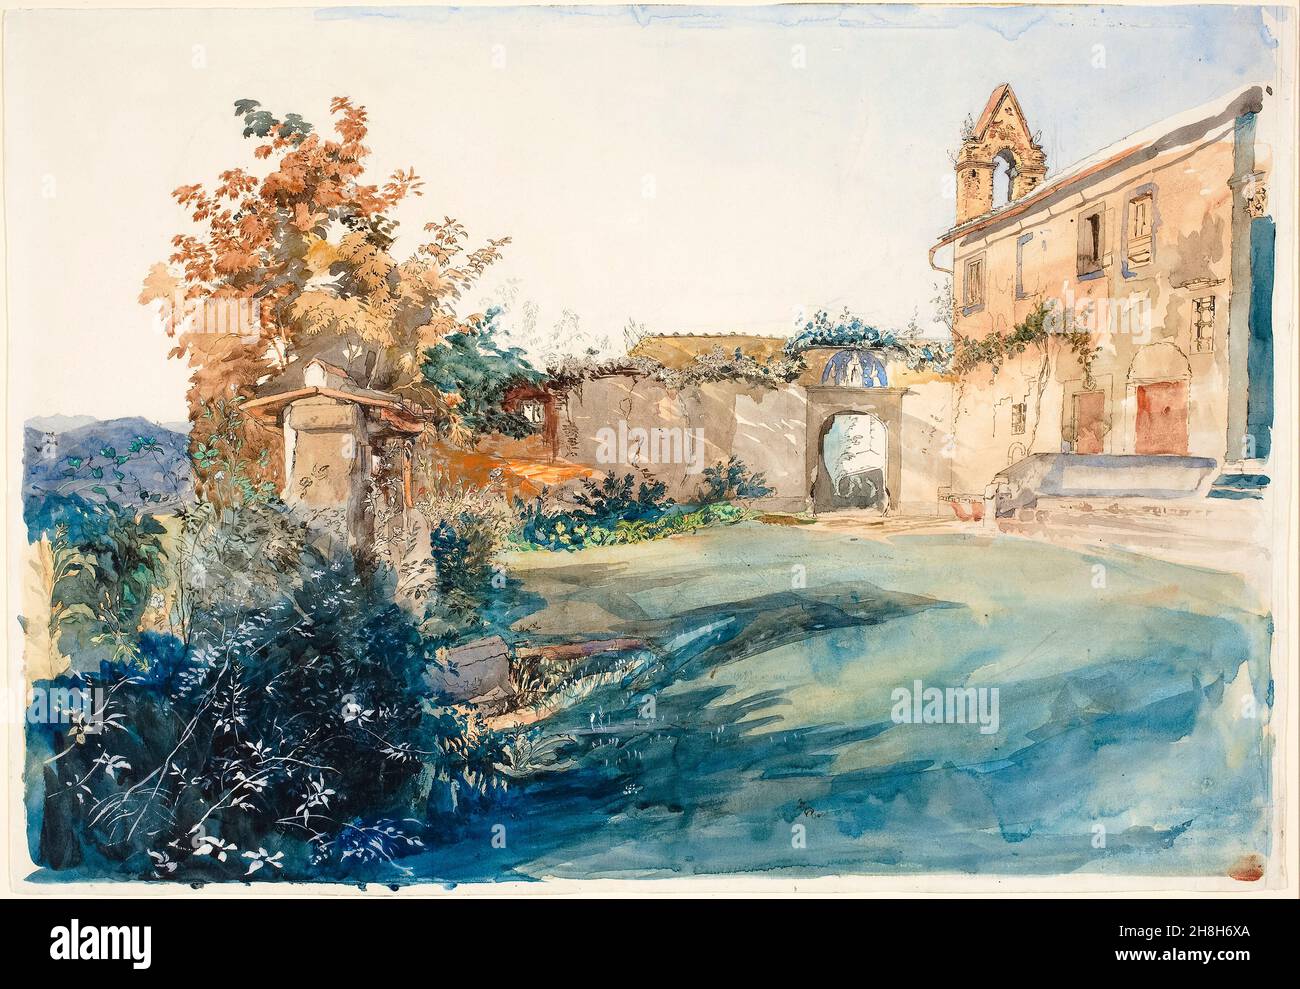 John Ruskin aquarelle peinture, le jardin de San Miniato près de Florence, 1845 Banque D'Images